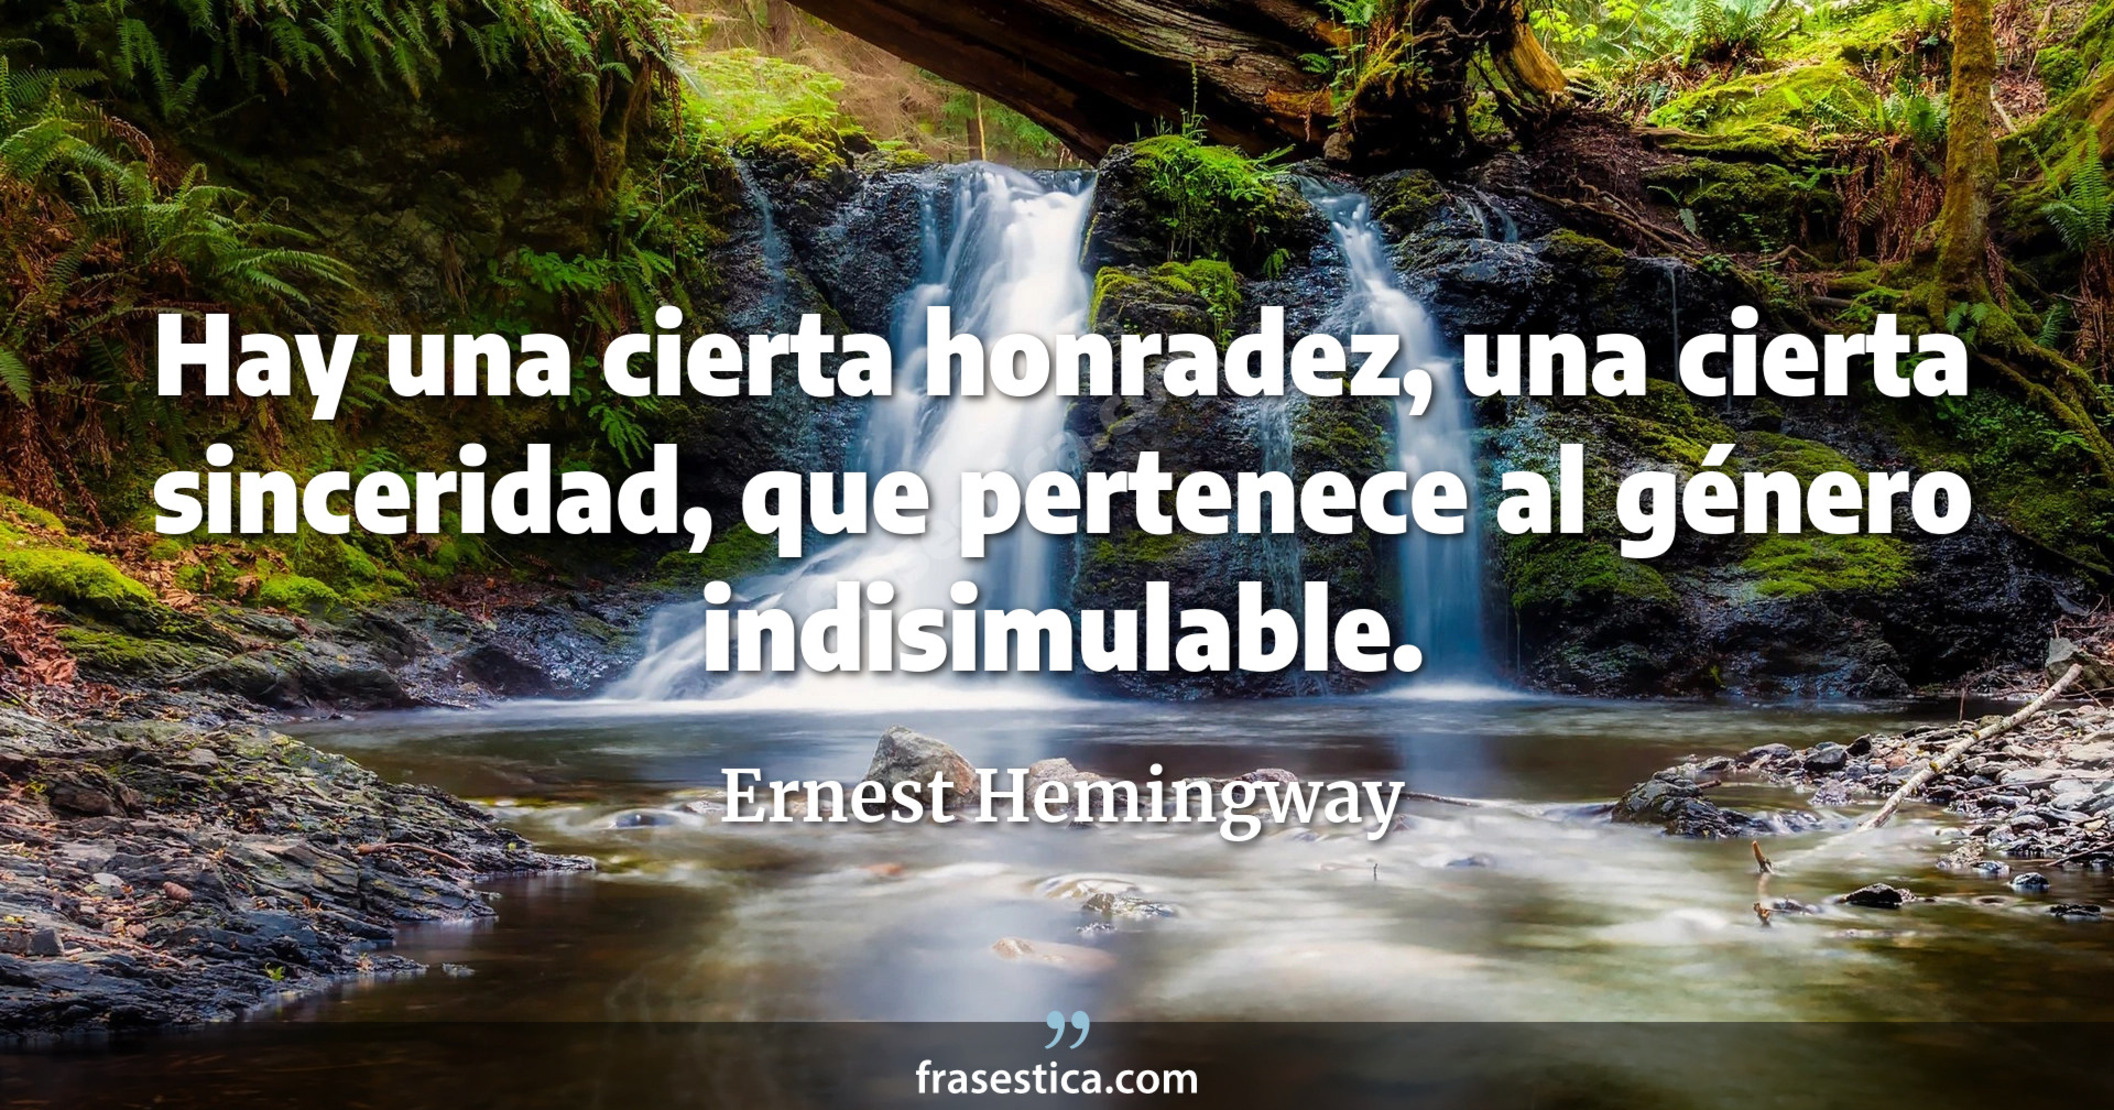 Hay una cierta honradez, una cierta sinceridad, que pertenece al género indisimulable. - Ernest Hemingway